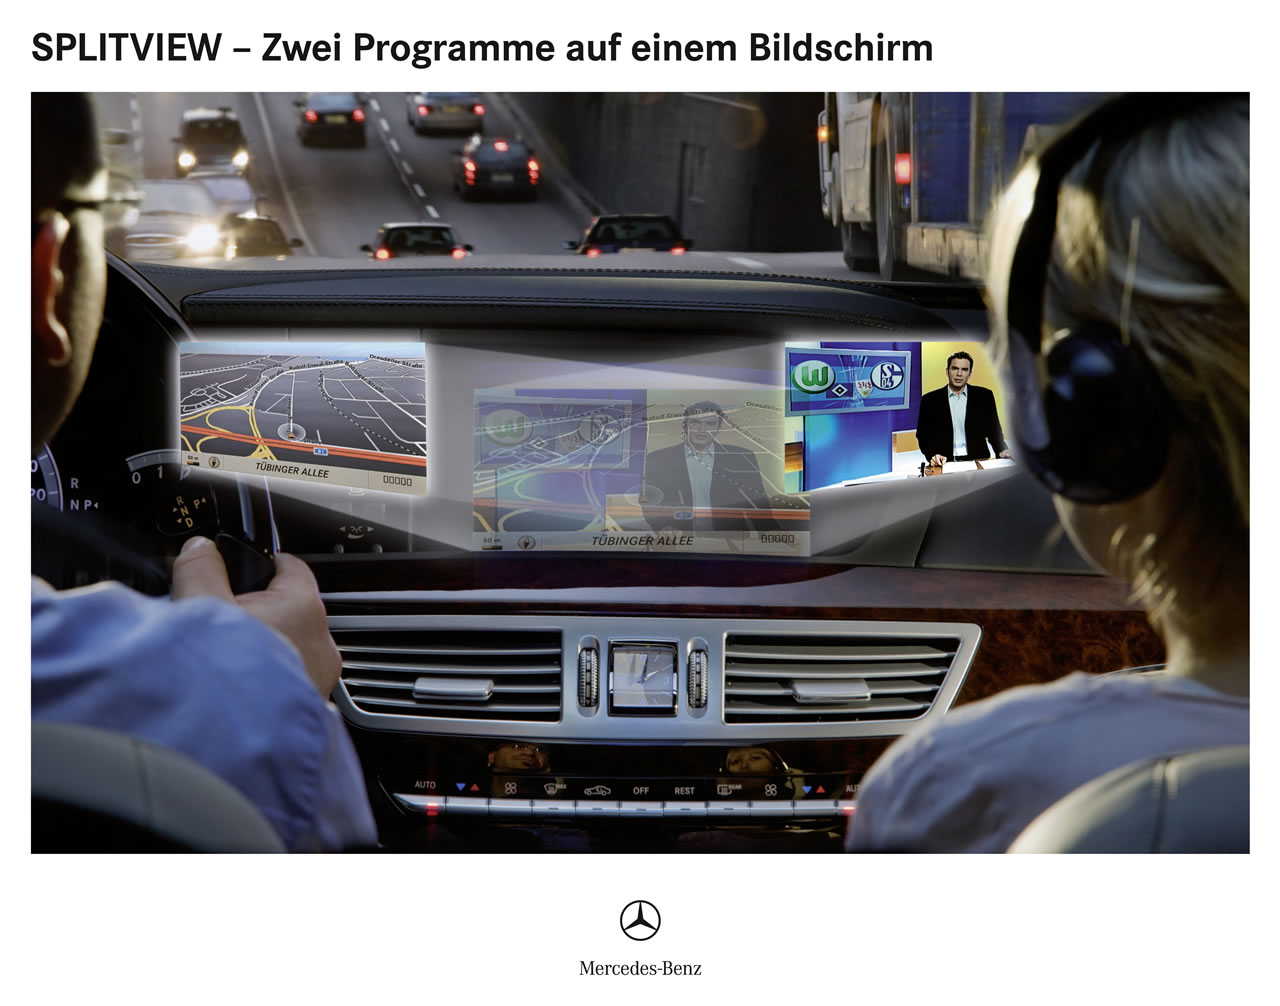 Новый S-Class Mercedes-Benz обойдется без водителя